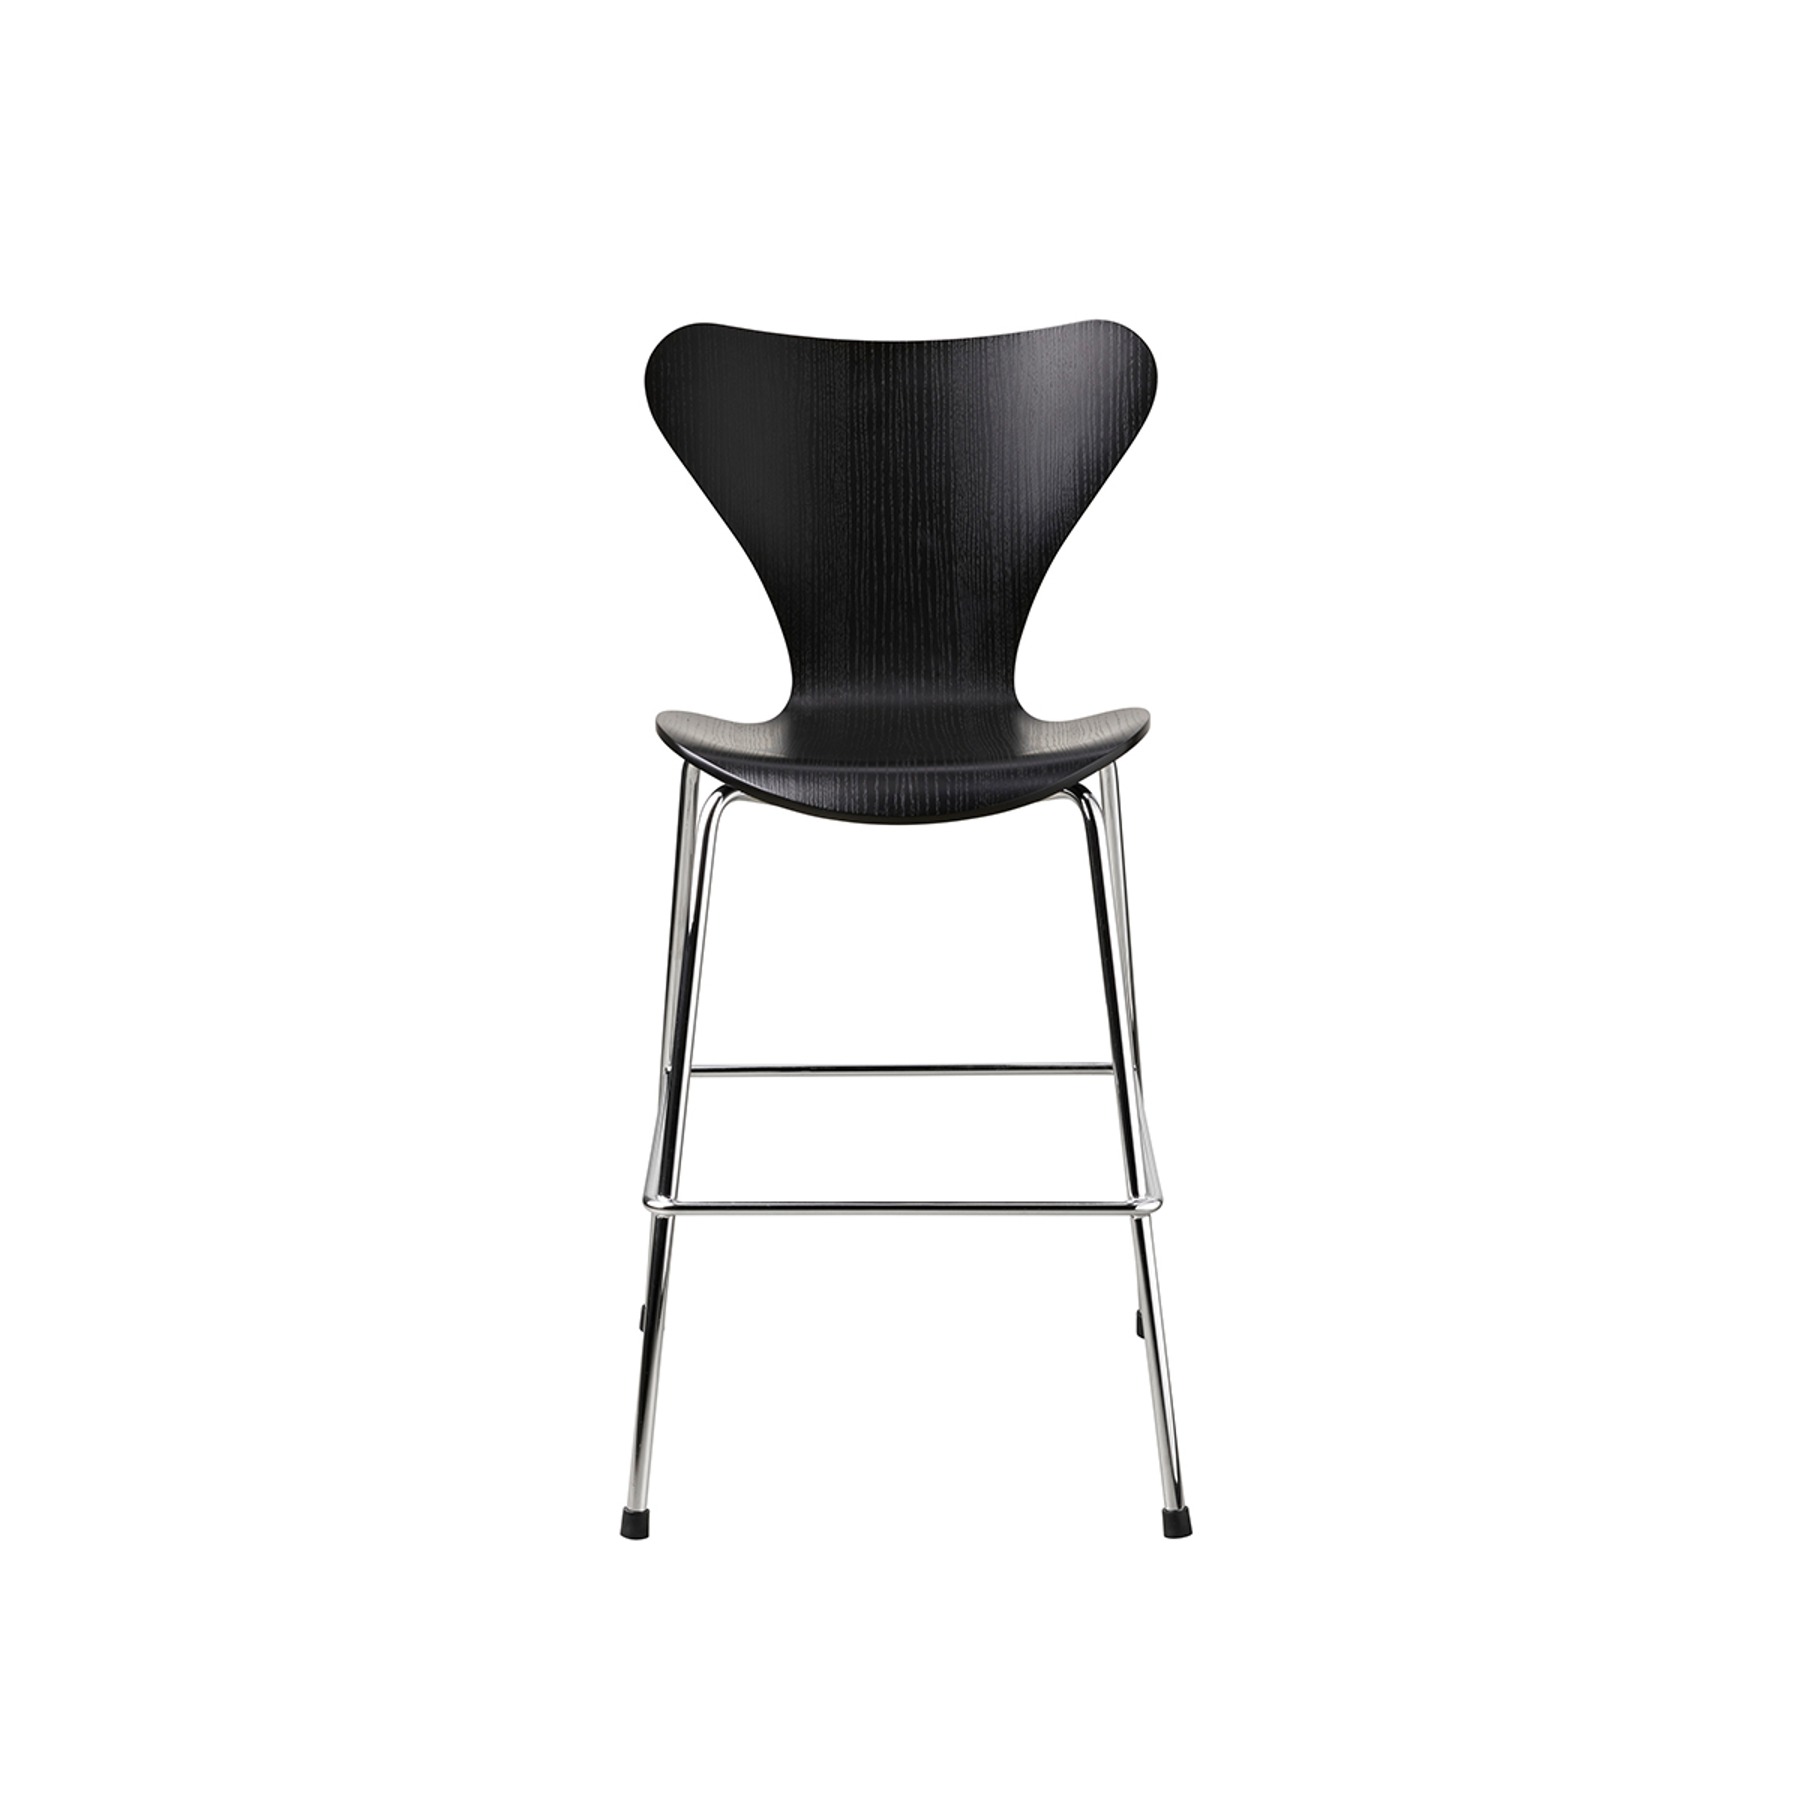 Fritzhansen Series 7™ Junior Chair 프리츠한센 시리즈 세븐 주니어 체어 블랙